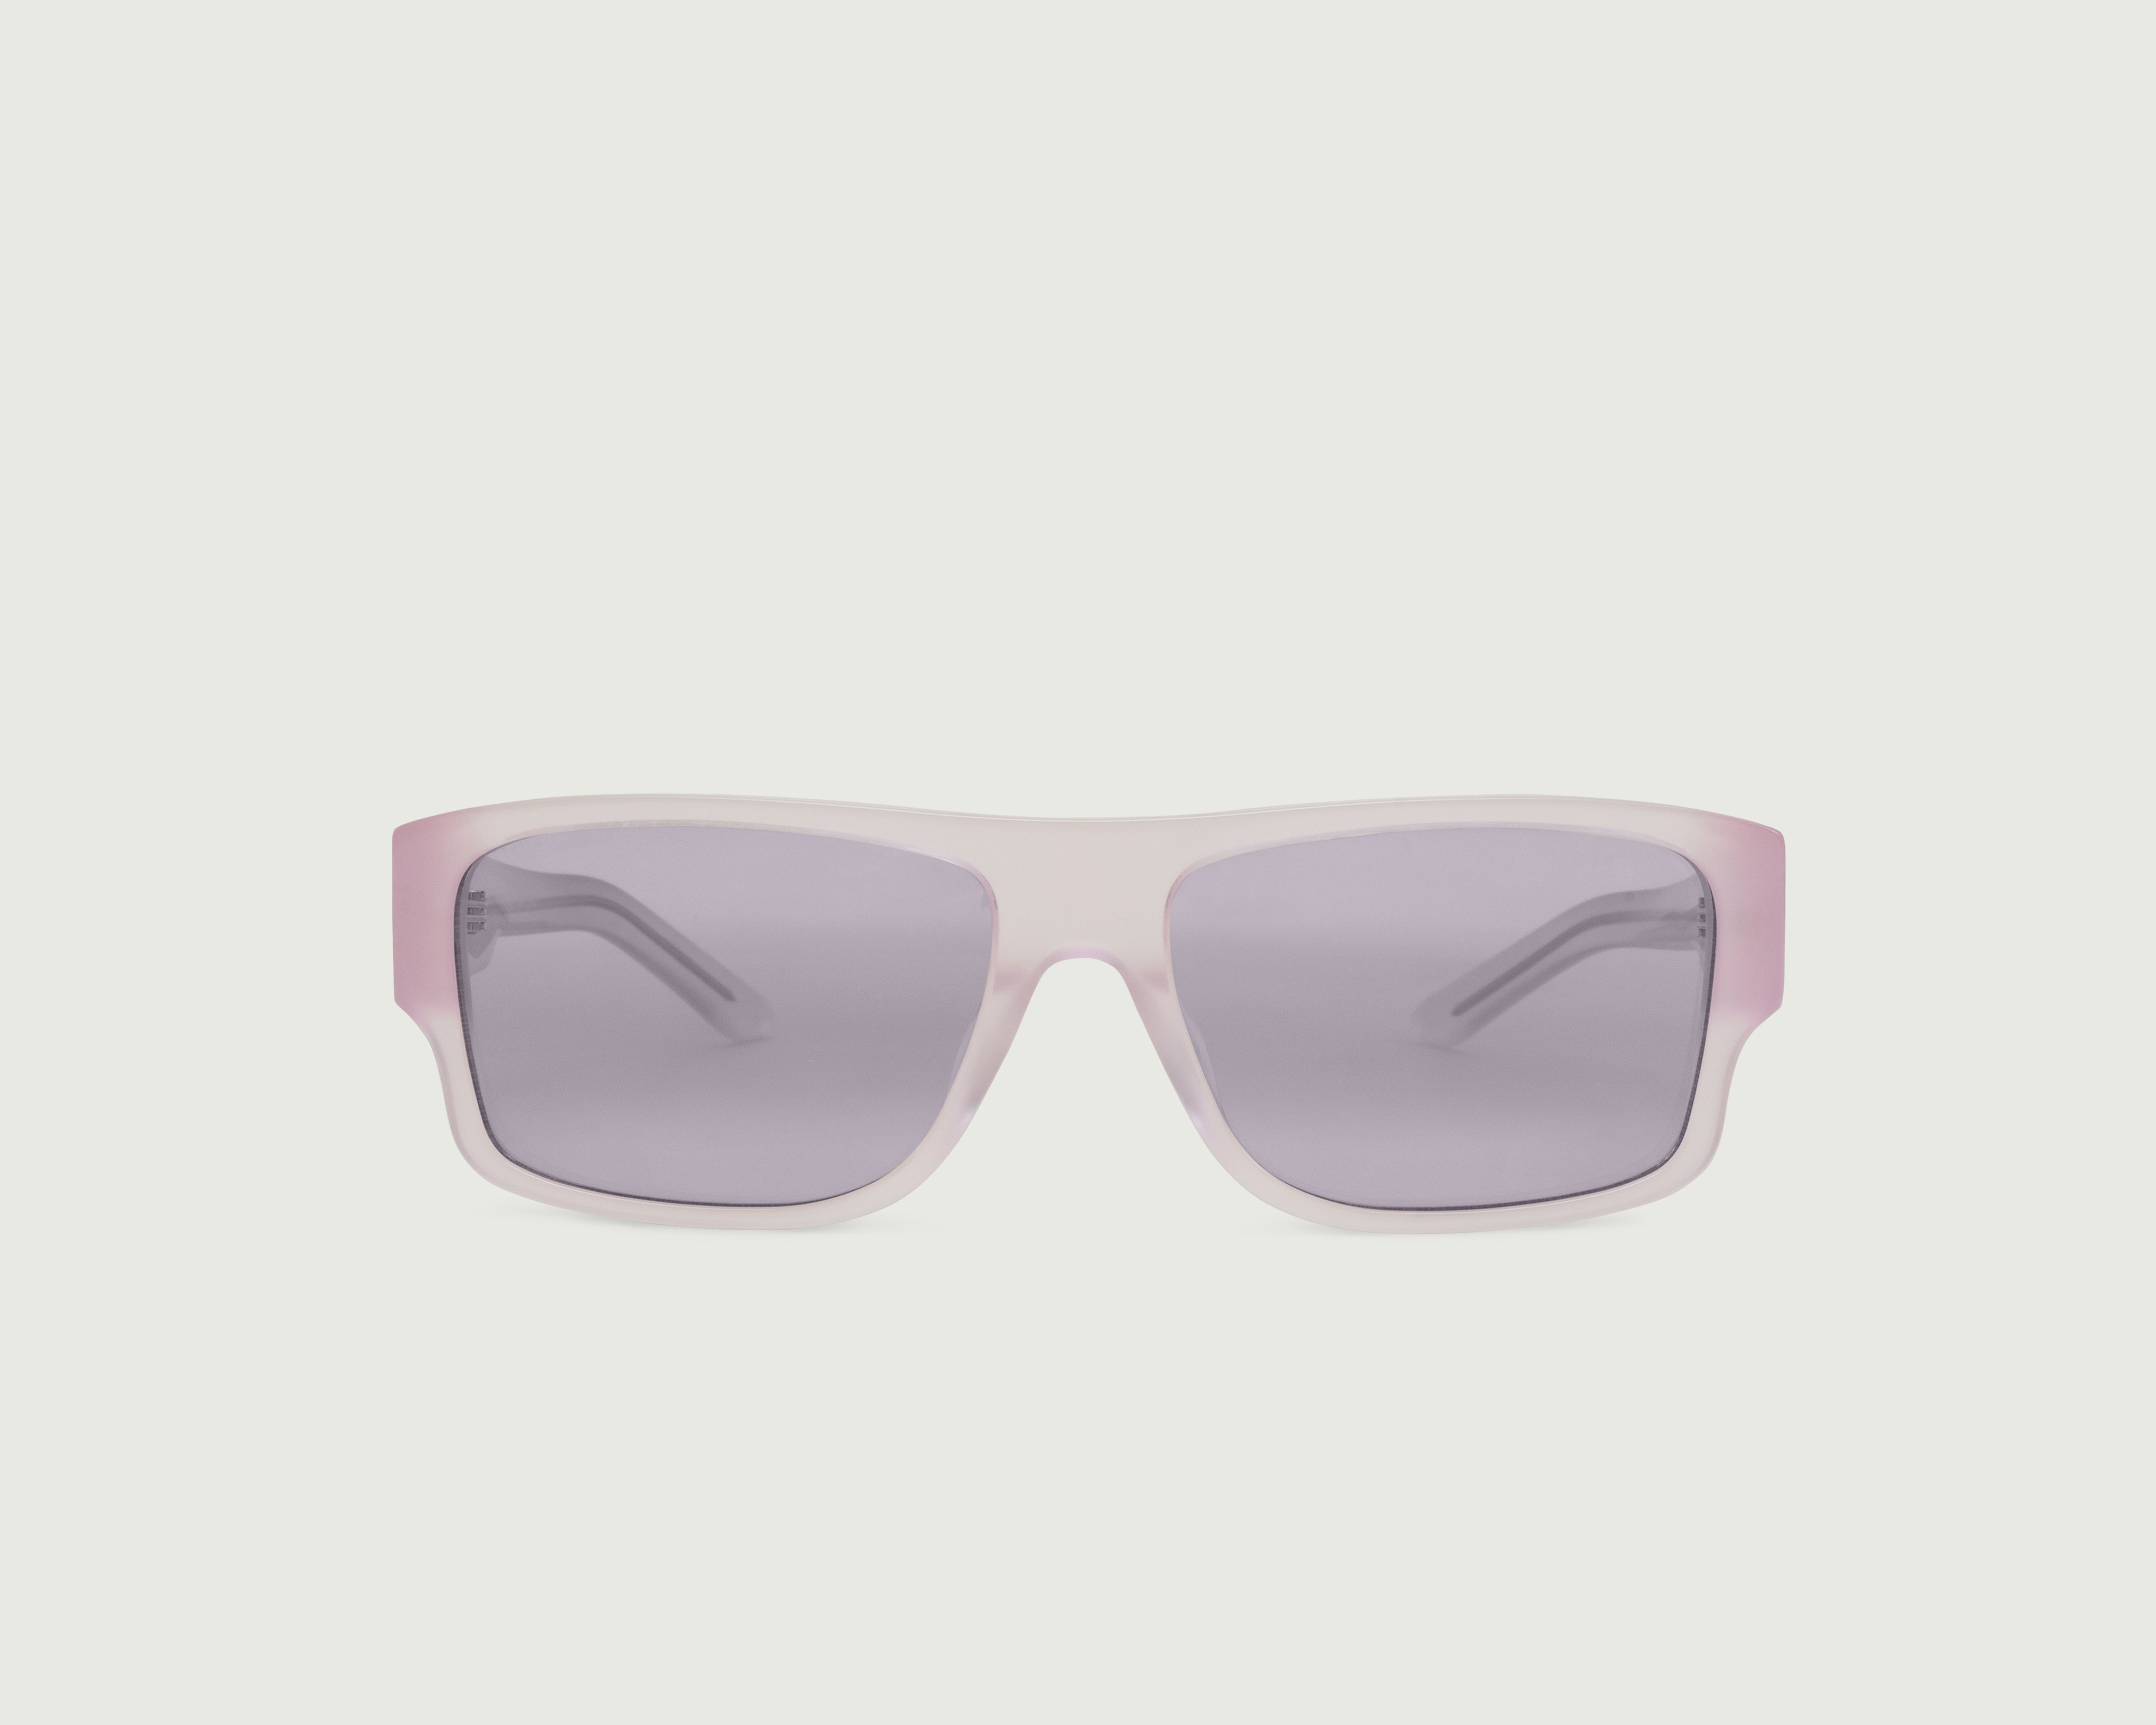 Venus::Nolan Sunglasses square pink acetate front